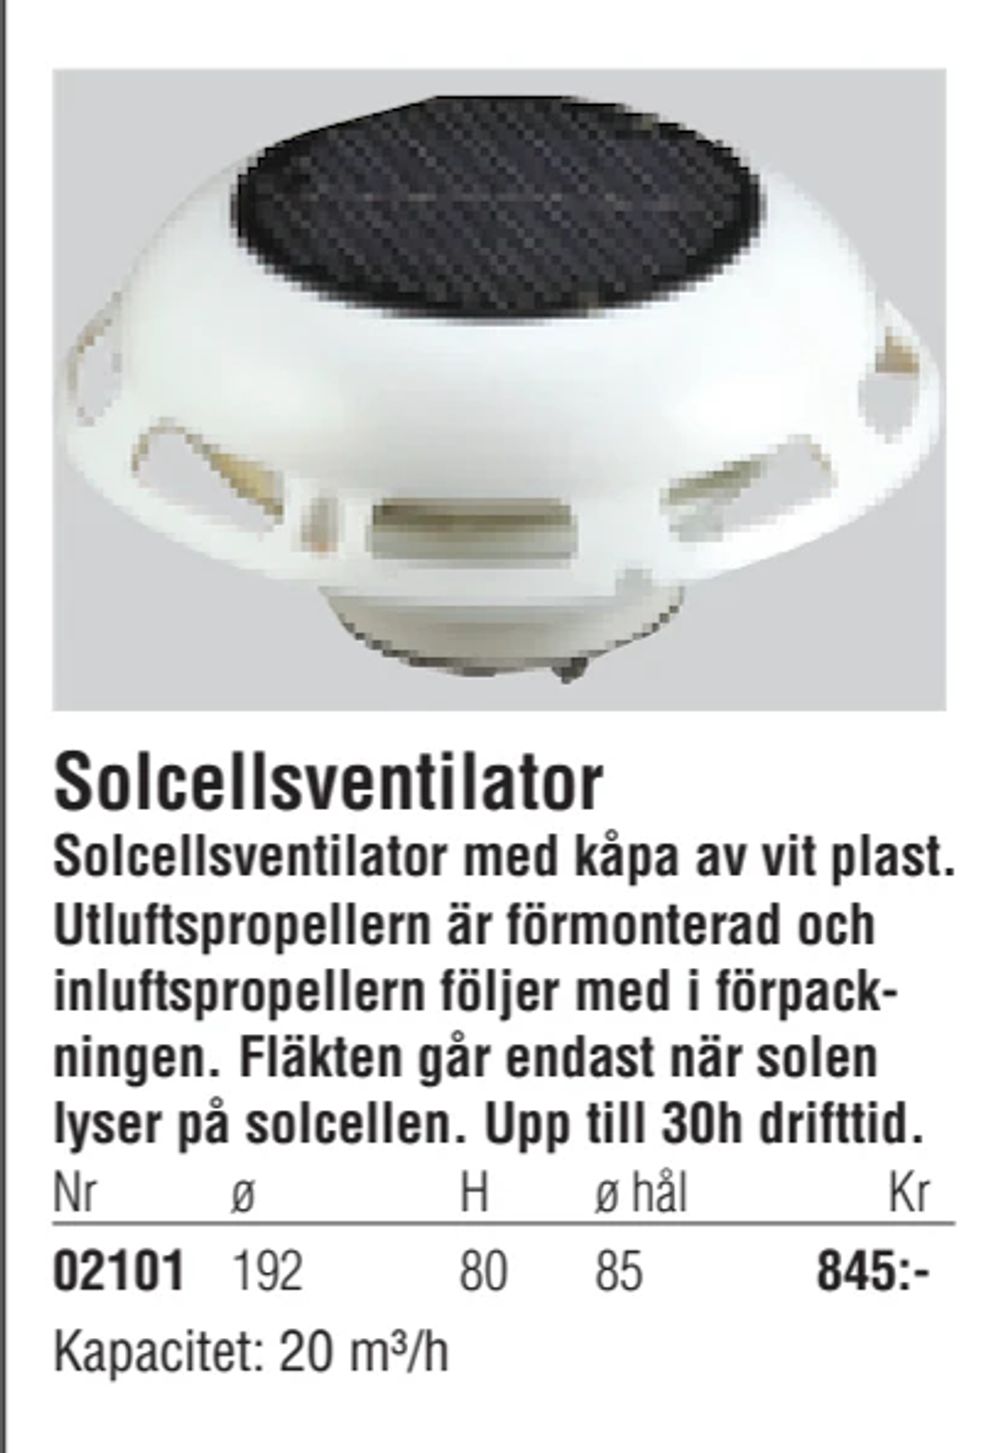 Erbjudanden på Solcellsventilator från Erlandsons Brygga för 845 kr